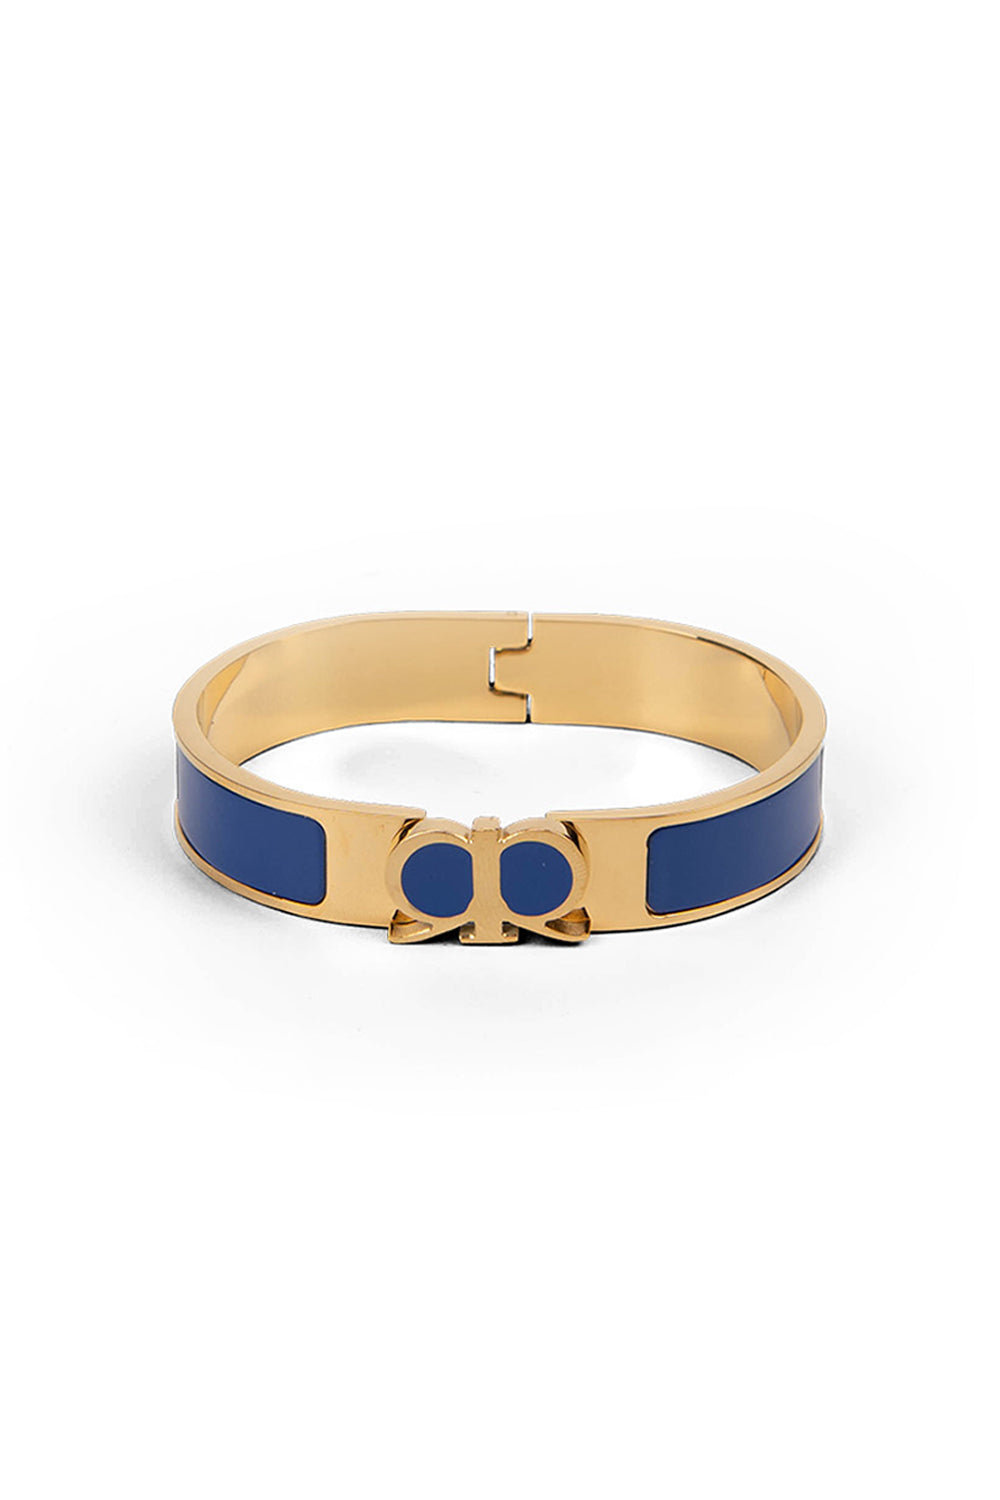 RR Bracelet in Royal Blue/Gold